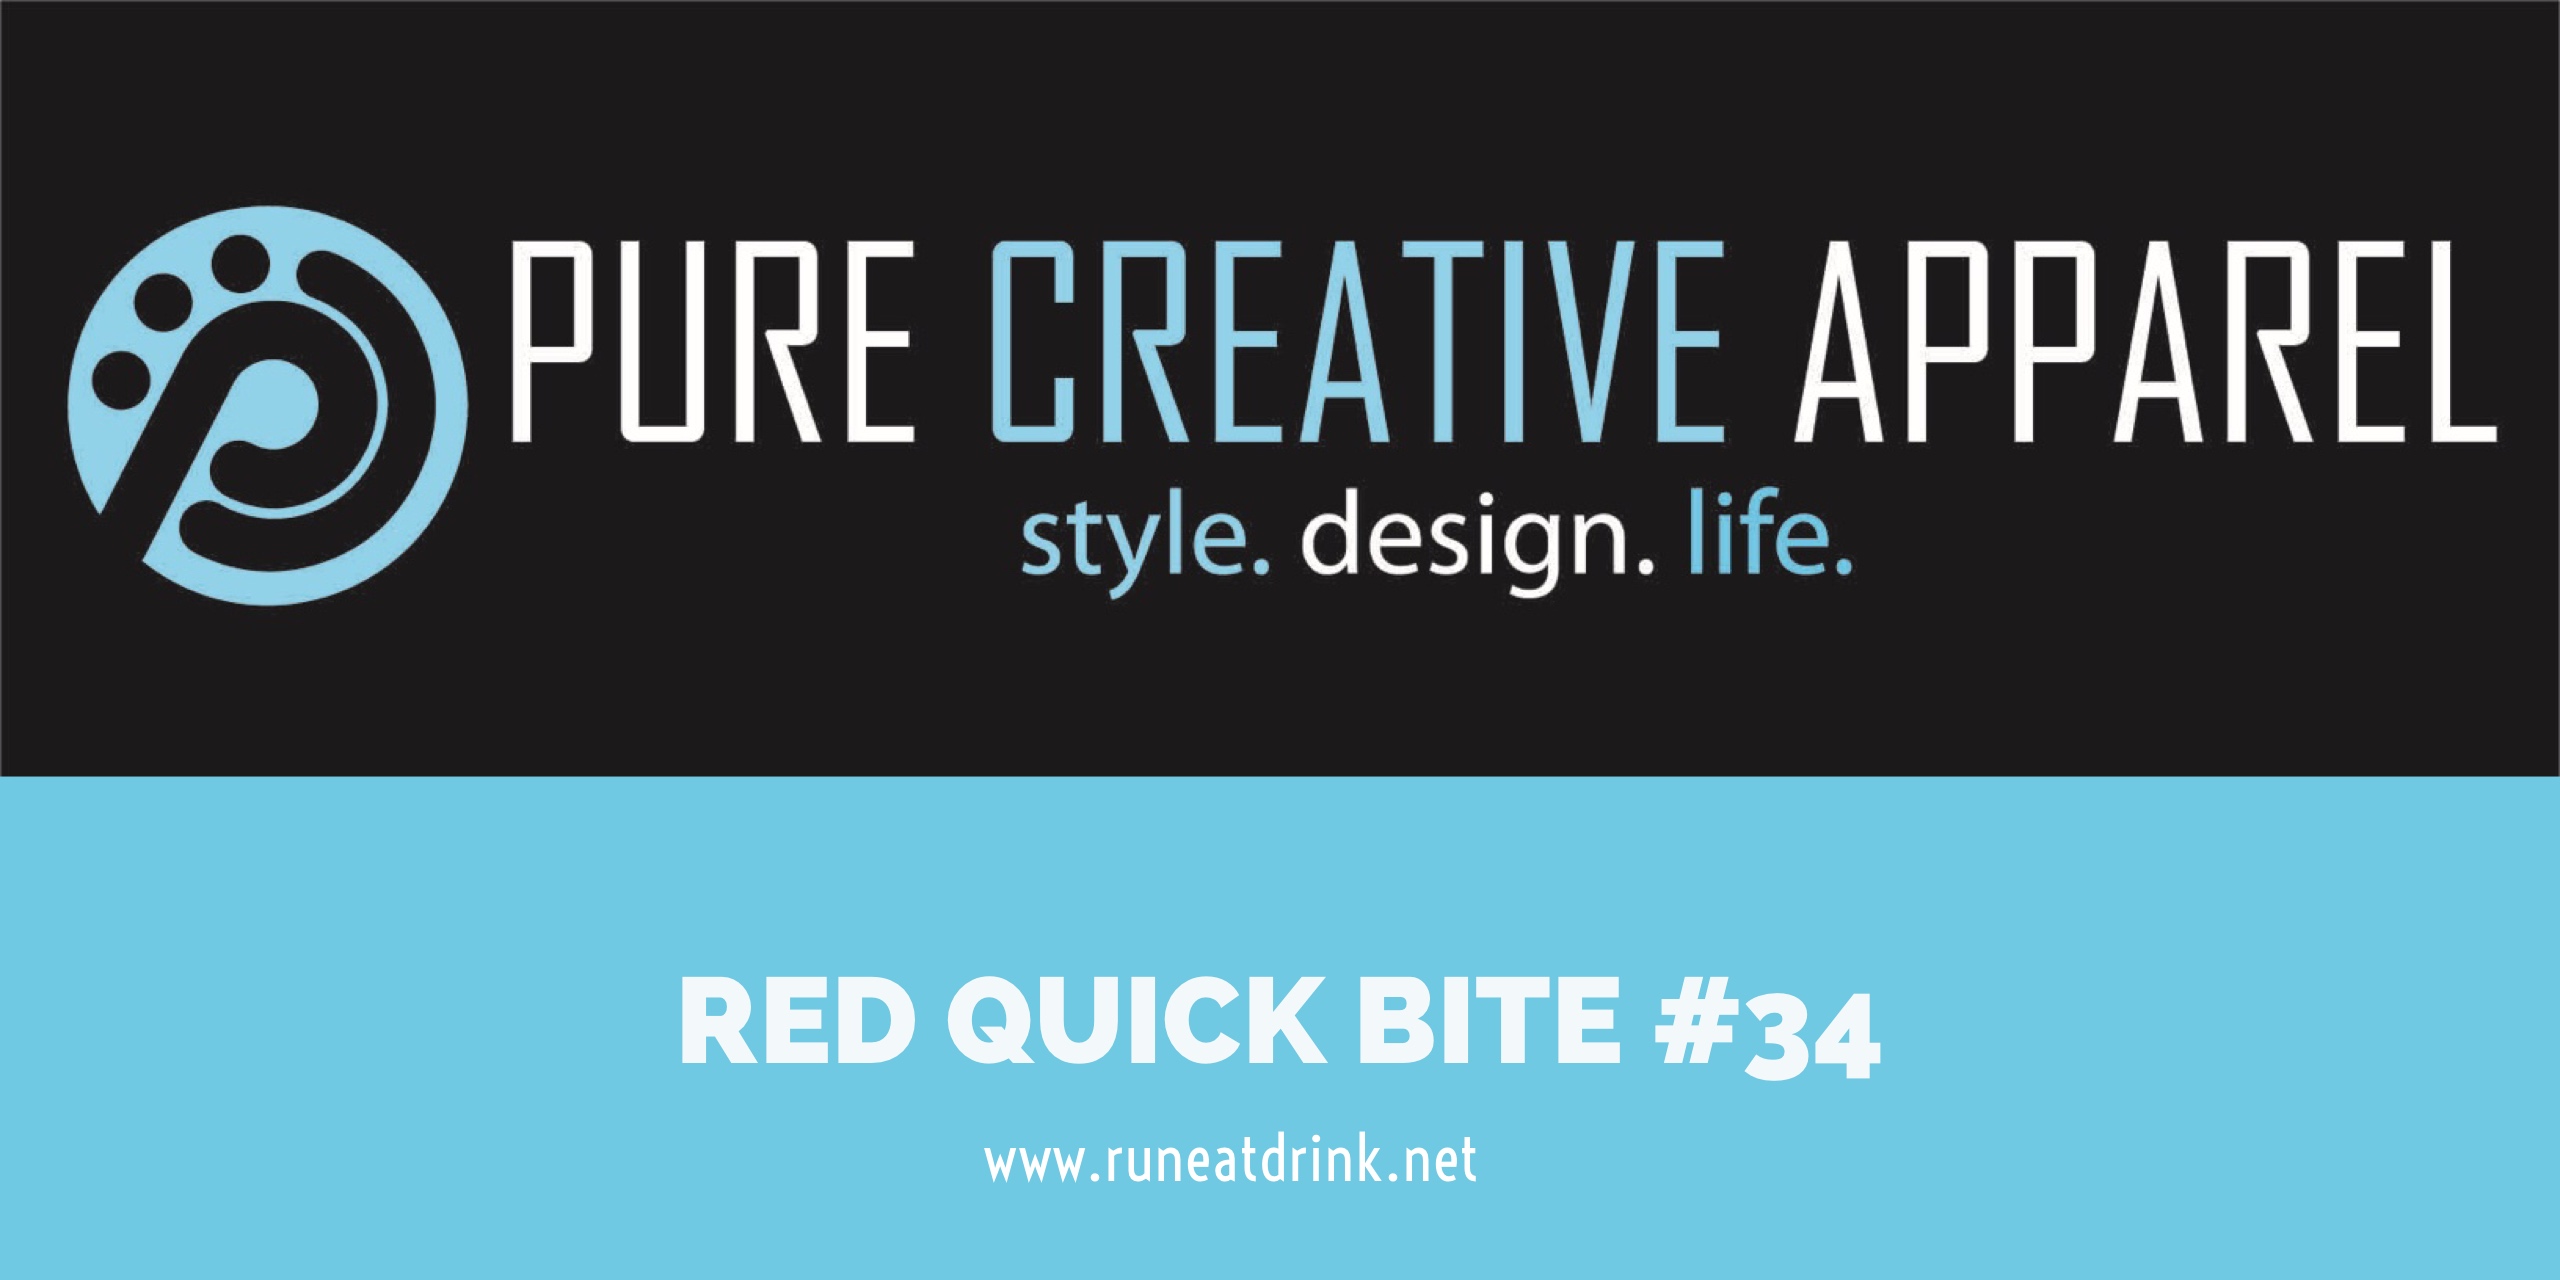 RED Quick Bite #34: Pure Creative Apparel